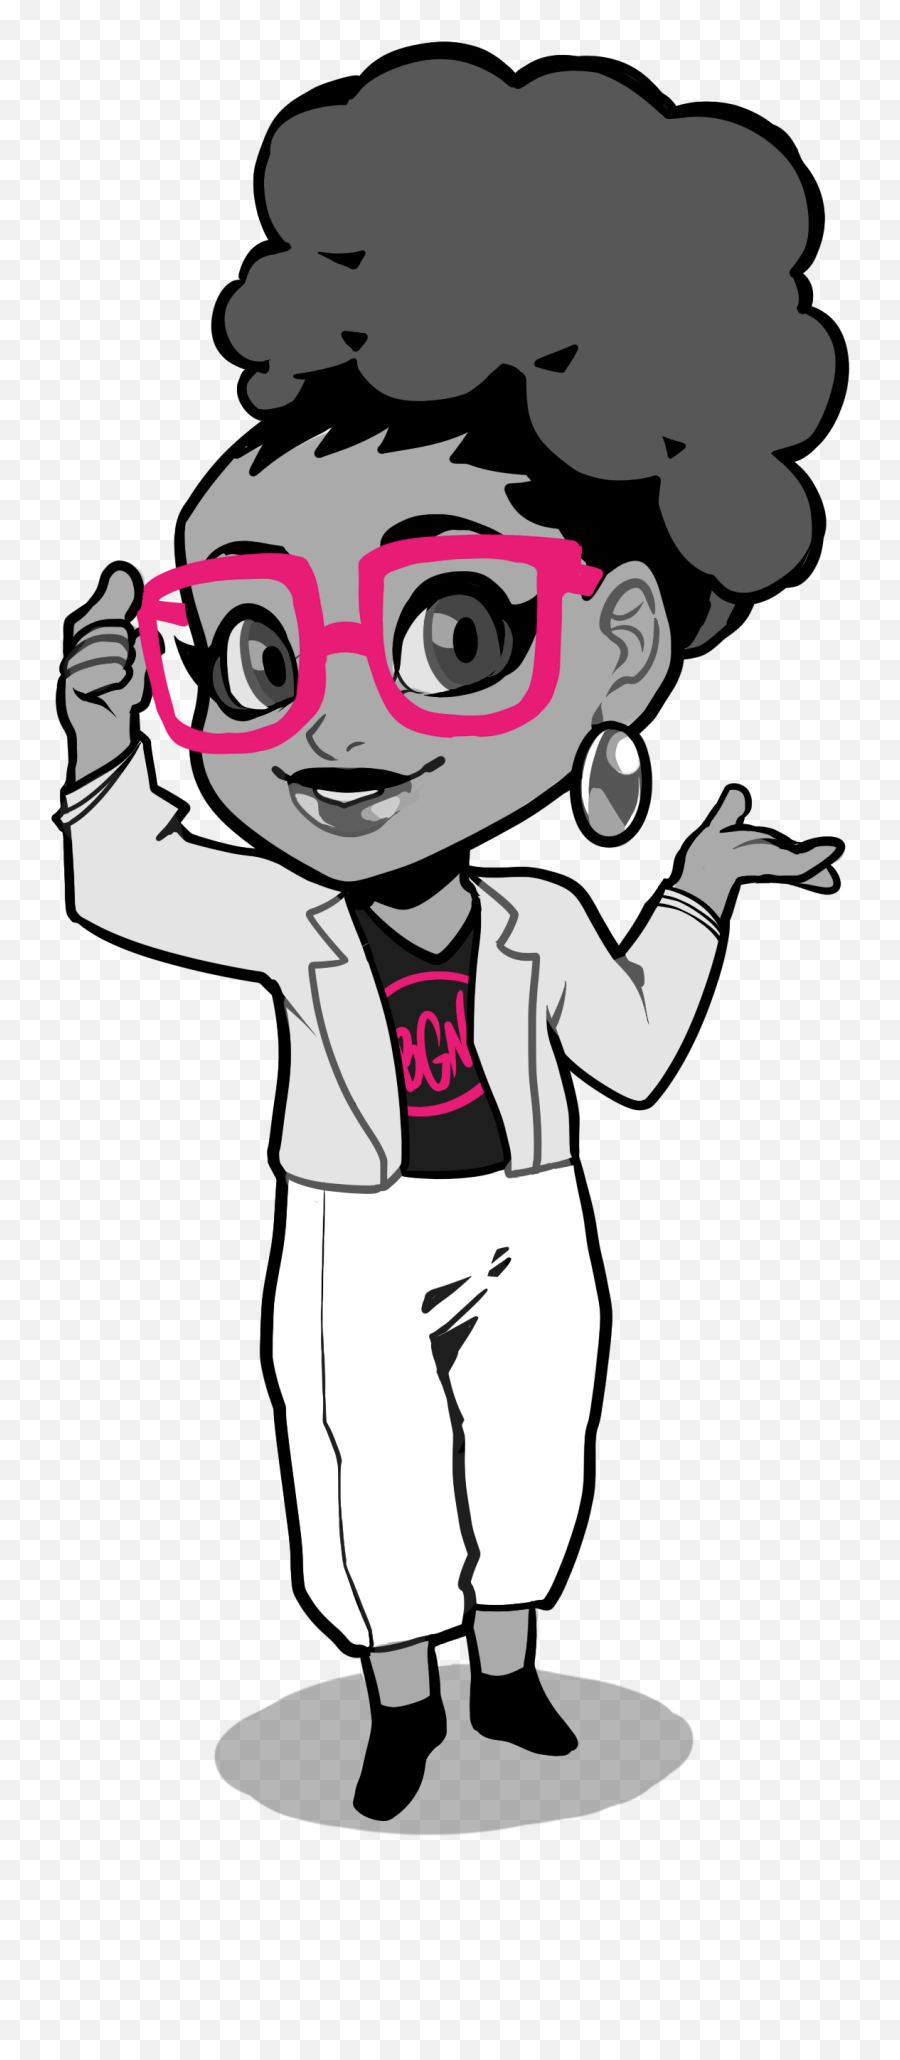 1 - Black Girl Nerds Logo Clipart Full Size Clipart Black Girl Nerd Cartoon Png,Nerd Glasses Transparent Background